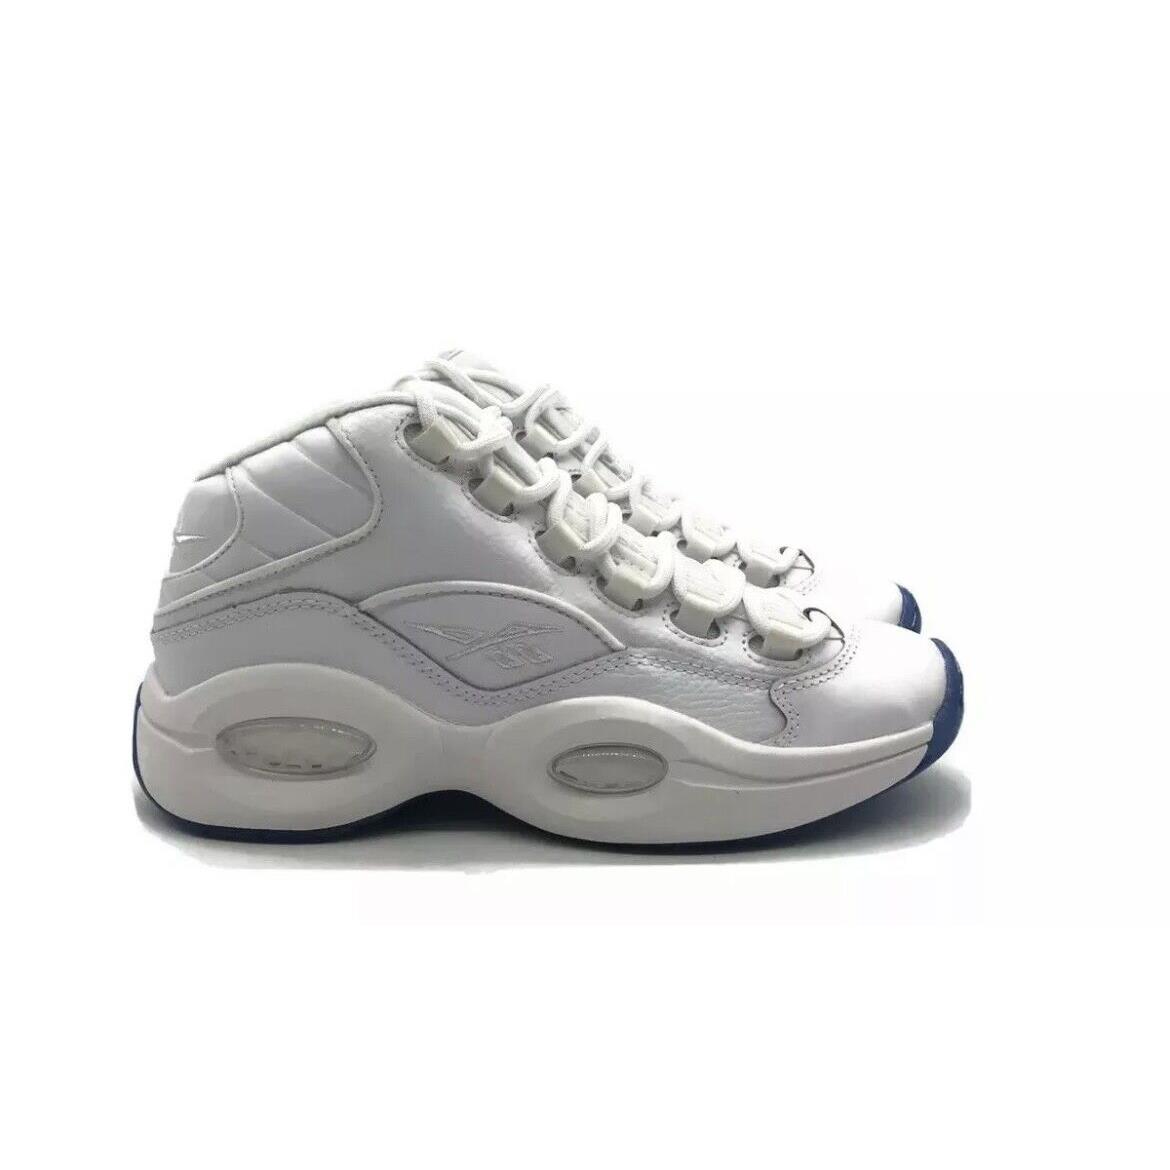 Reebok Question Mid J Iverson Big Kids Basketball Shoe White School Sneaker - White